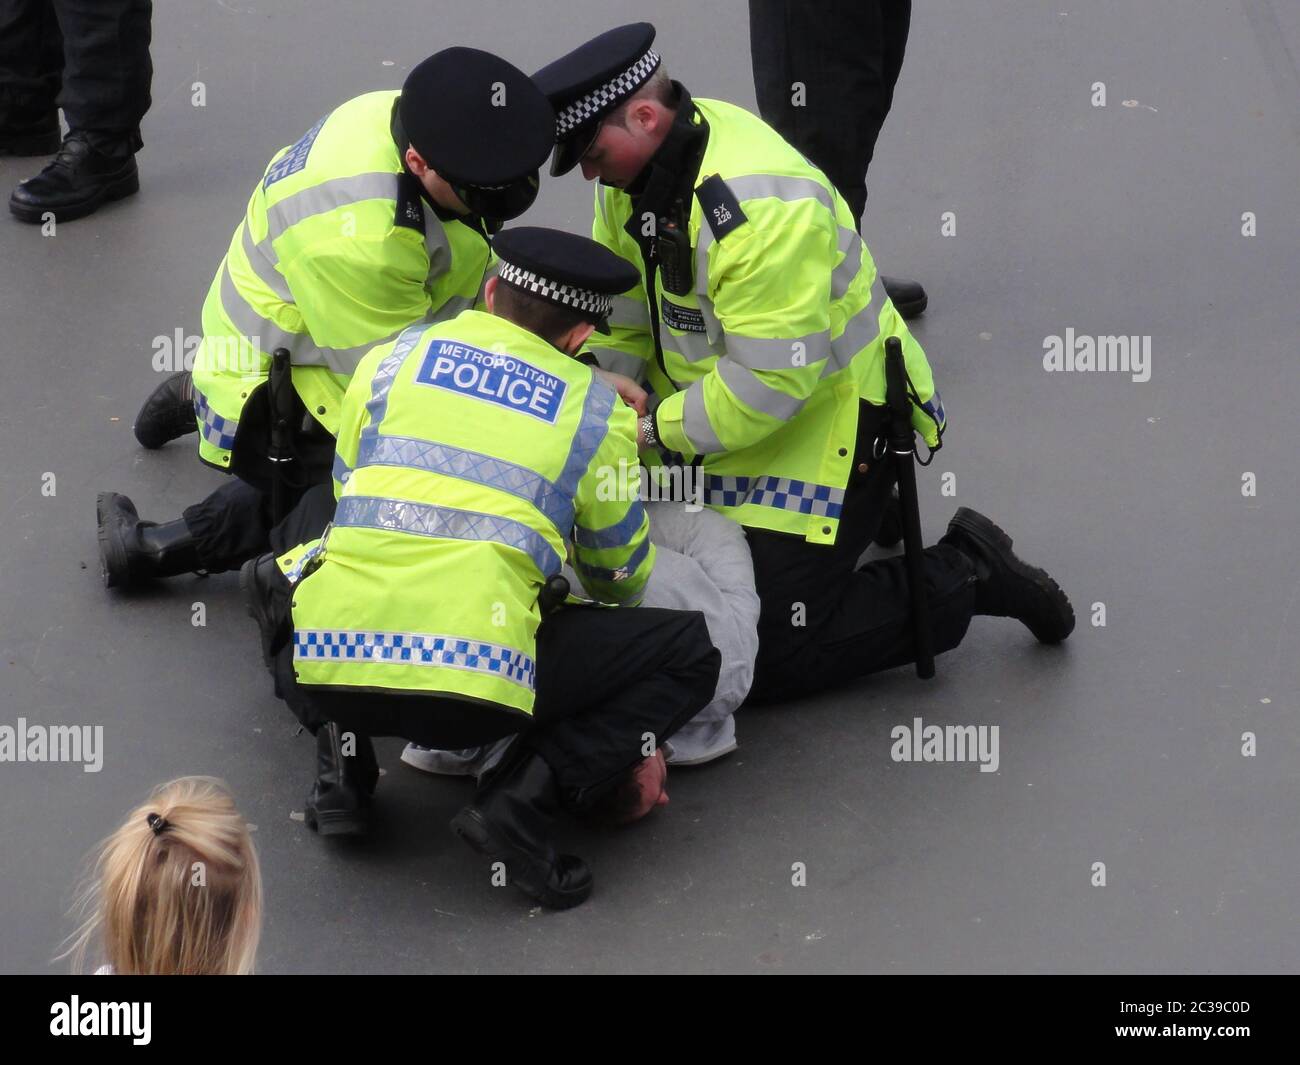 Londres, Royaume-Uni 11 avril 2010 les flics britanniques ont arrêté un homme avant un match de football montrant comment ils se tenaient au cou avec un bras et une main, par opposition à un genou utilisé par les flics aux États-Unis Banque D'Images